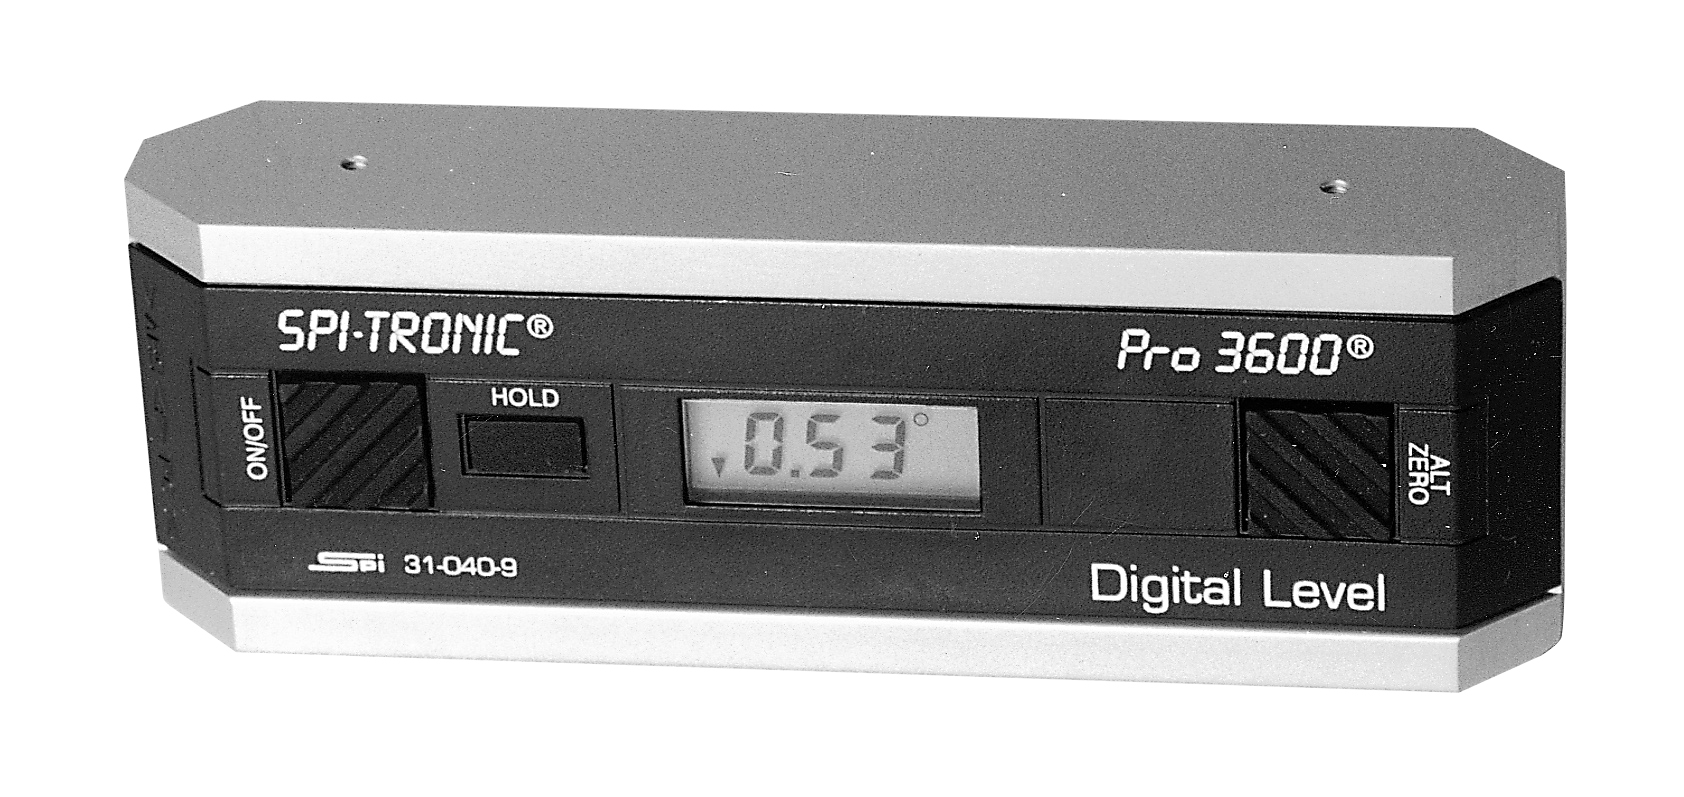 เครื่องวัดระดับน้ำ ความเอียงดิจิตอลประเภท PRO-3600